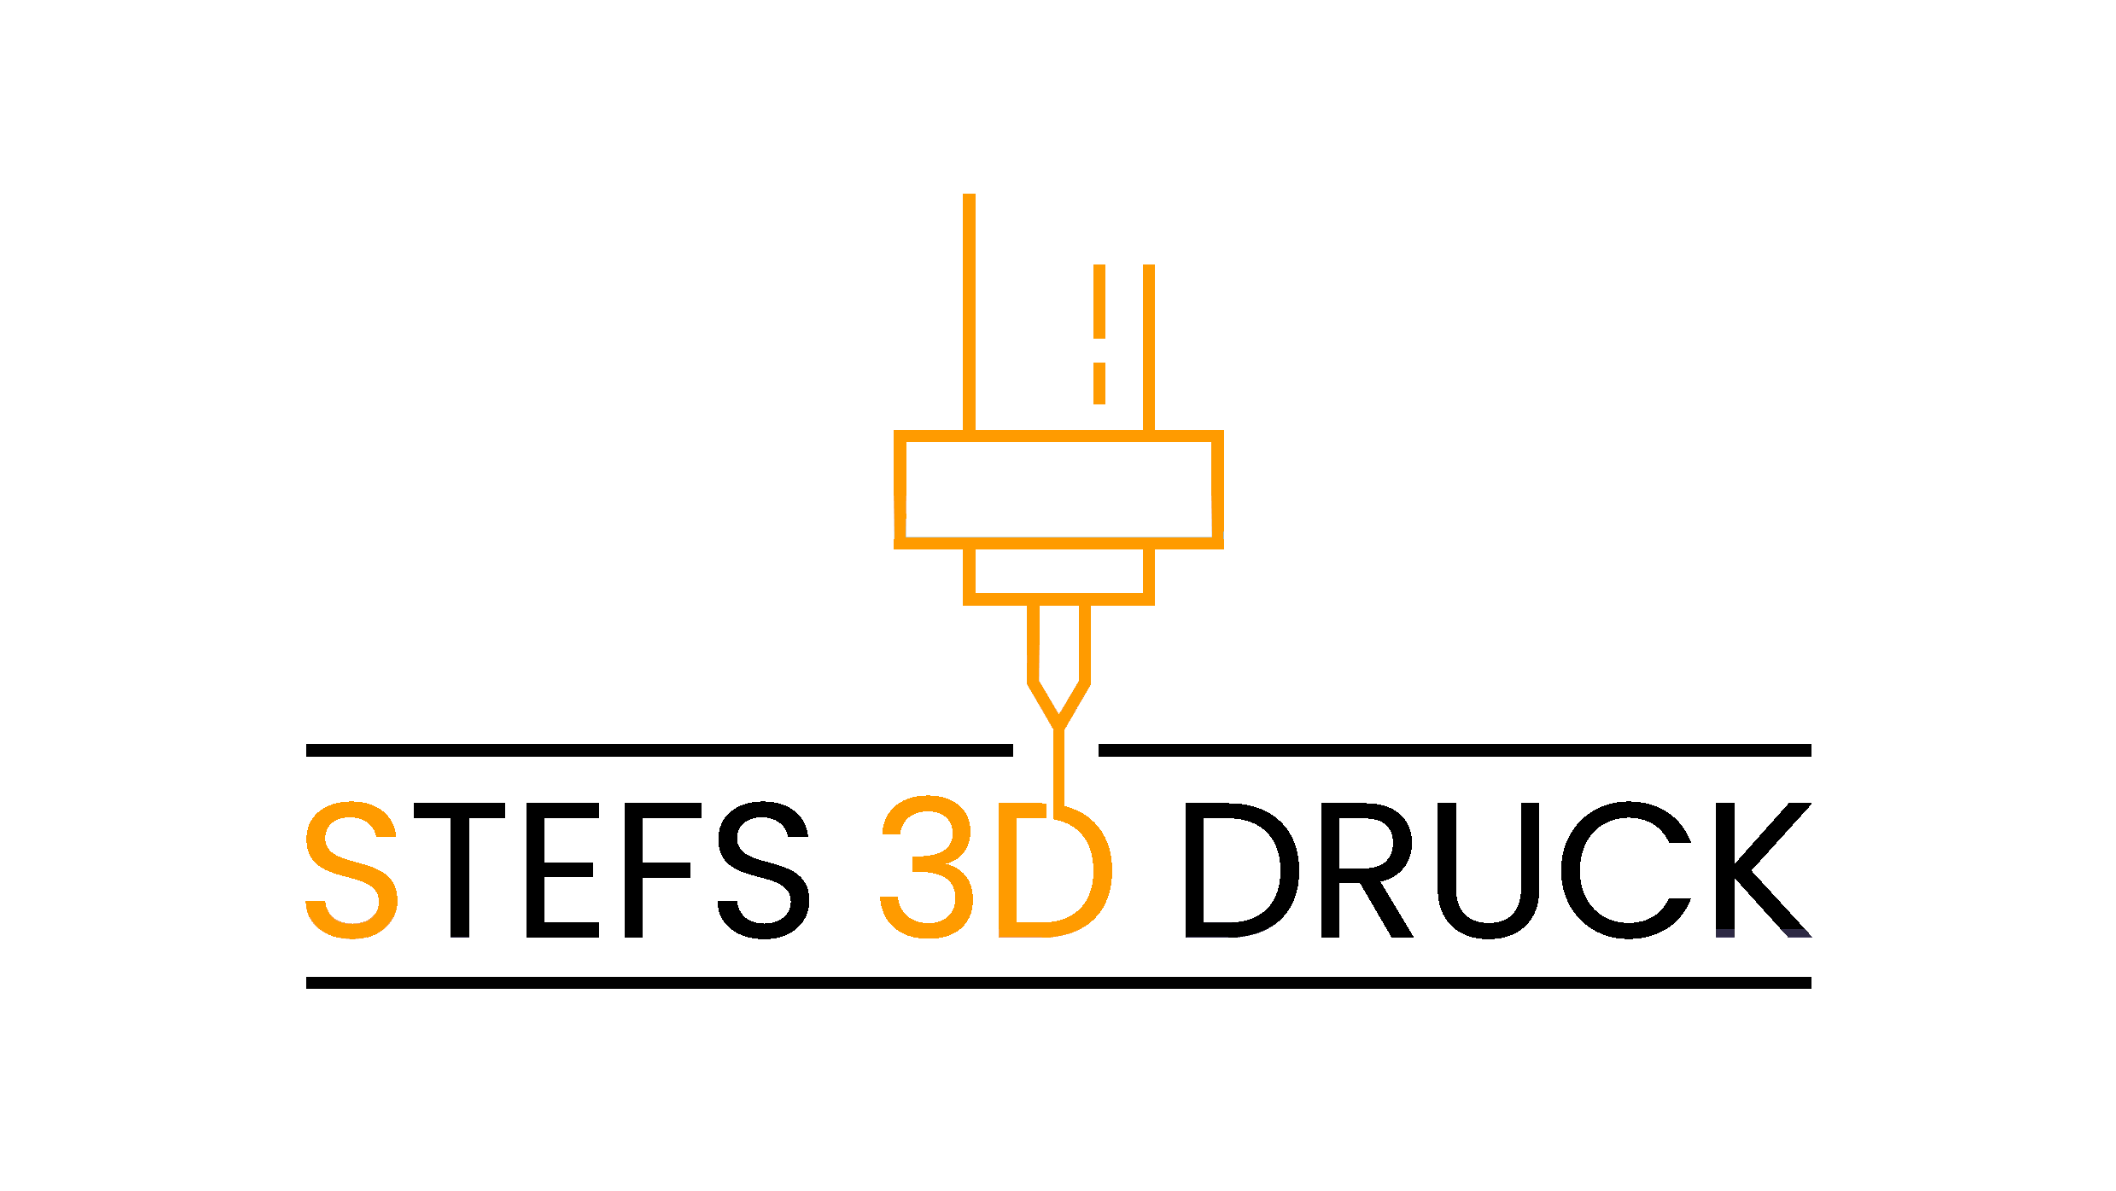 Bild 1 Stefs 3D Druck in Landshut